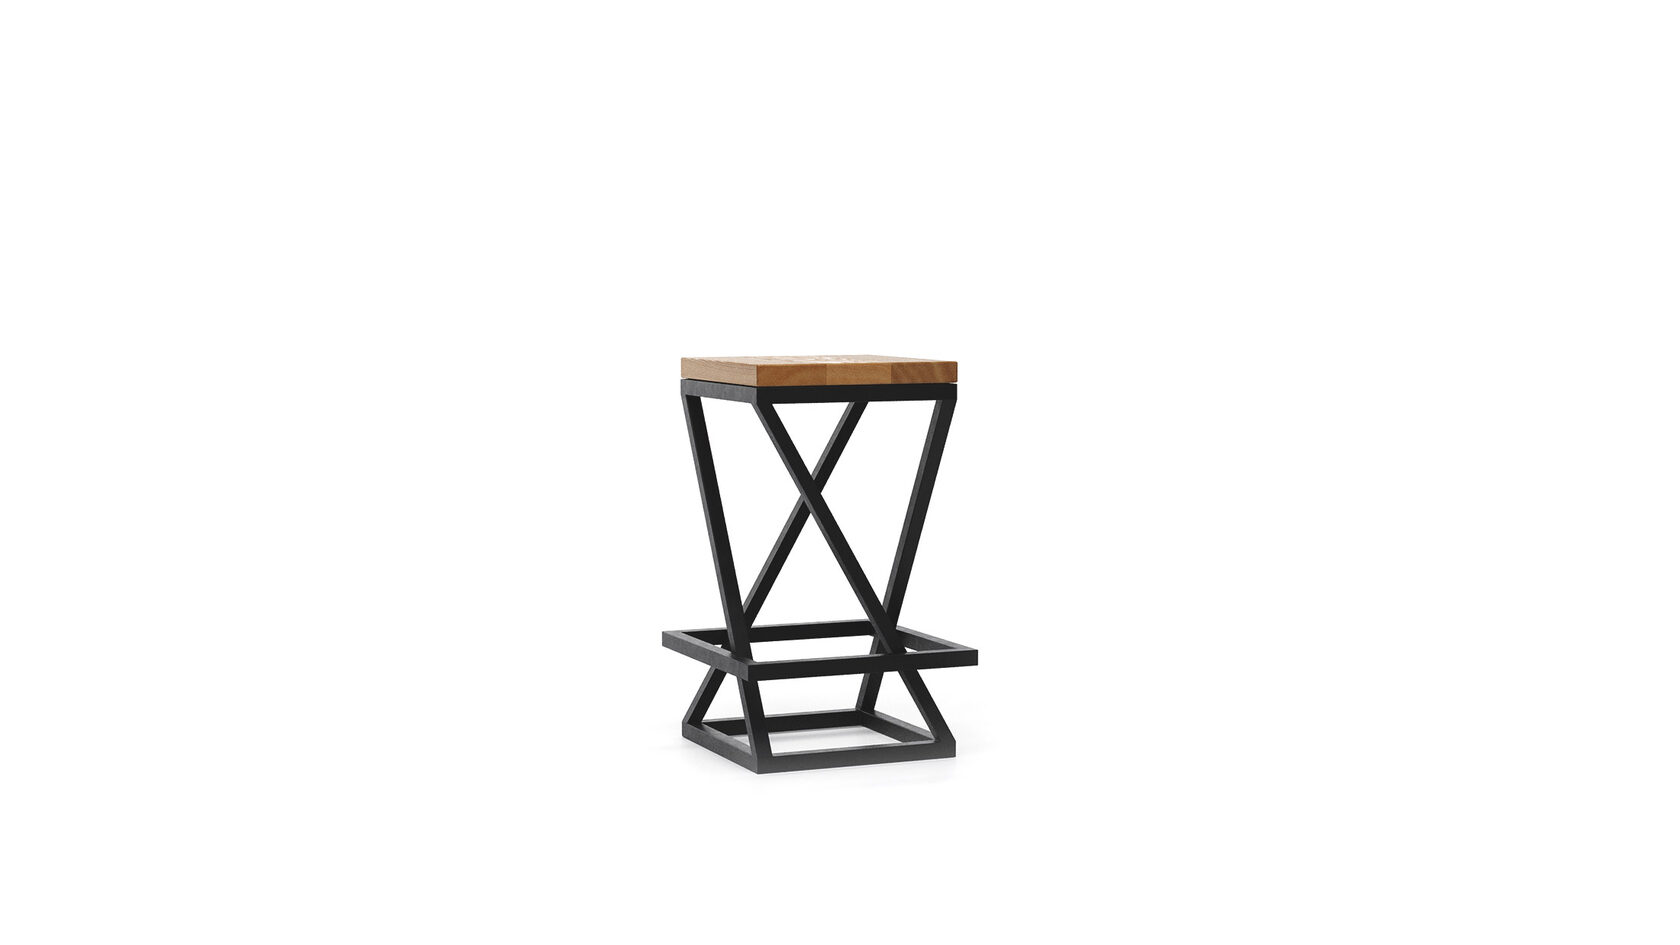 Современный стул Скагерн в стиле лофт ▪ модель lofcha083 ▪ топ из массива дерева ▪ вид сверху